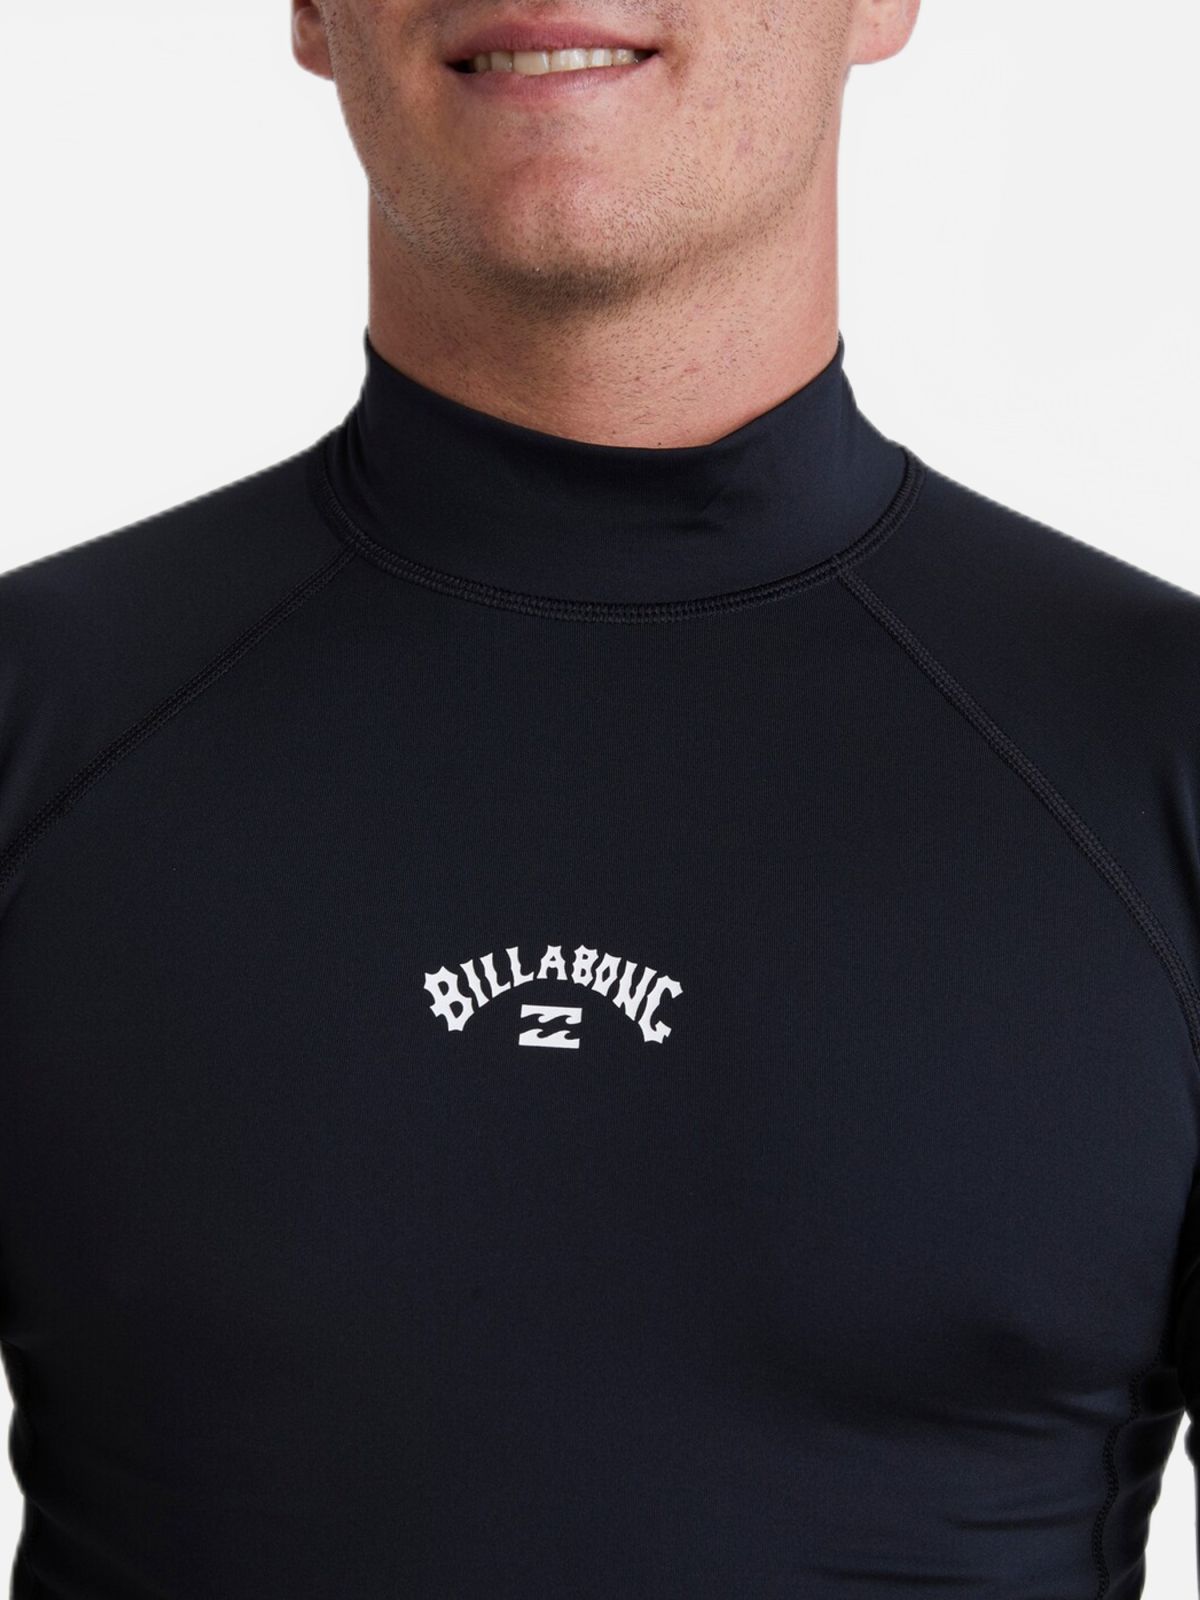  חולצת גלישה עם לוגו של BILLABONG